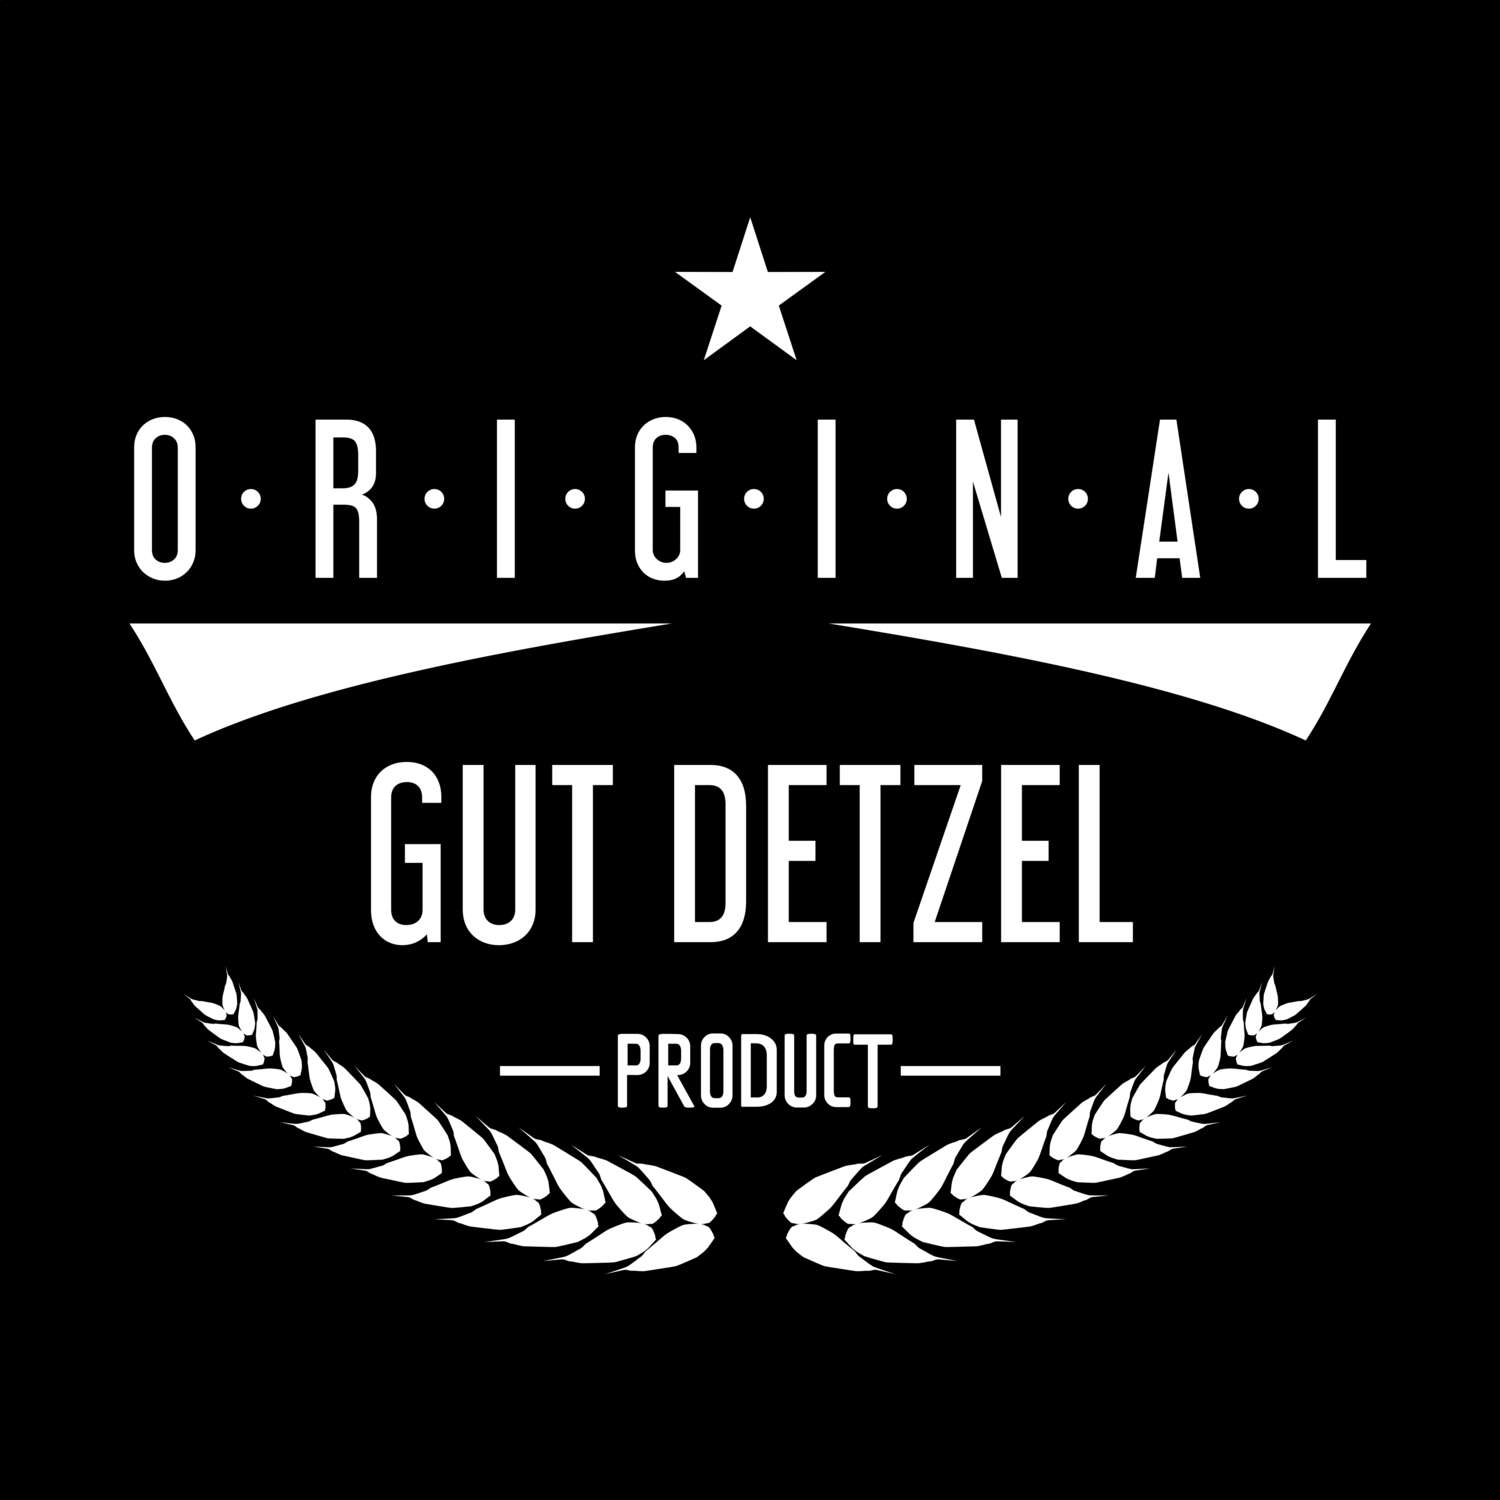 Gut Detzel T-Shirt »Original Product«